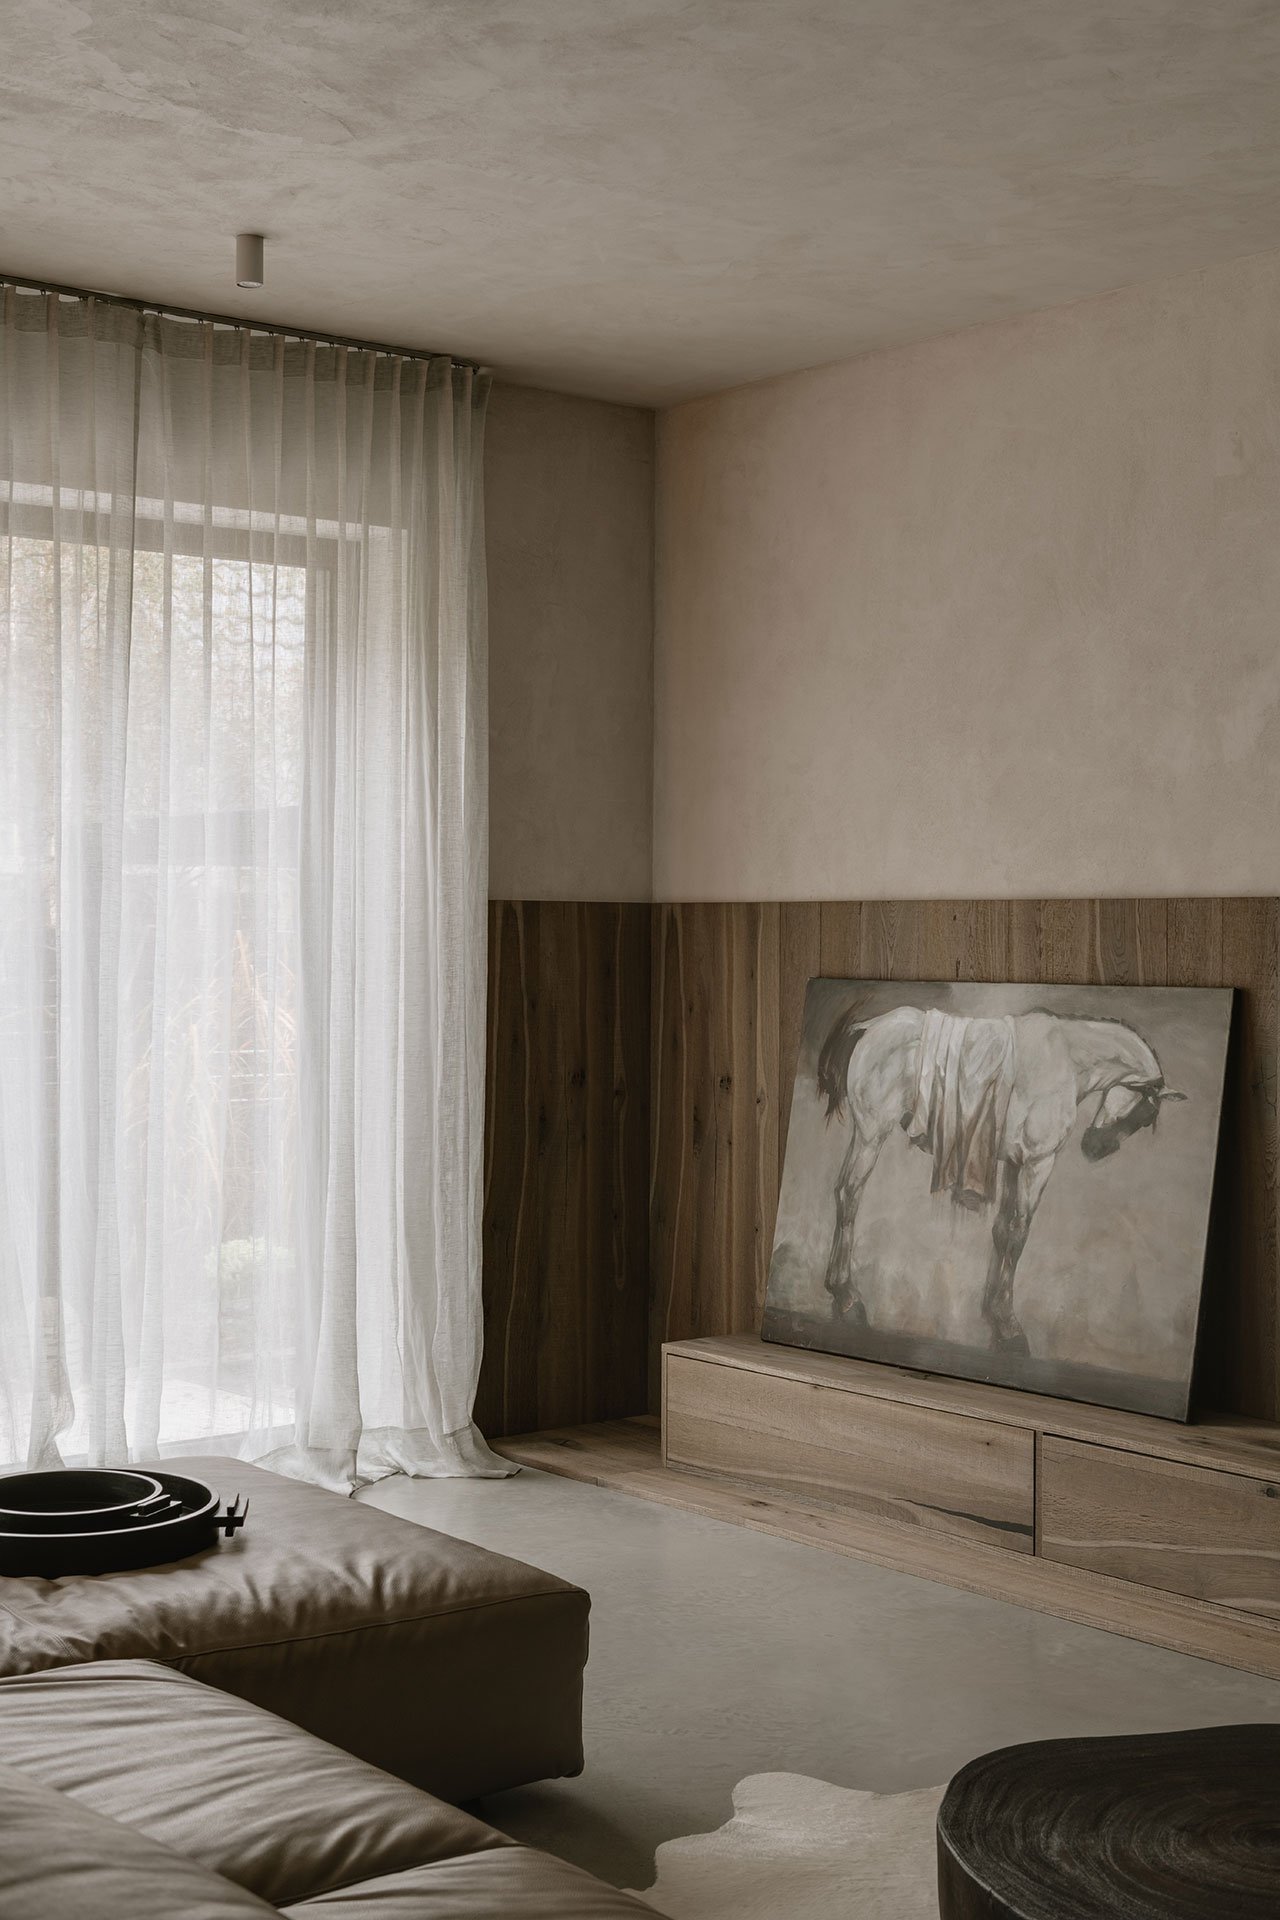 Casa en Polonia con interiores en color ocre y mucha artesania salon con cortinas blancas